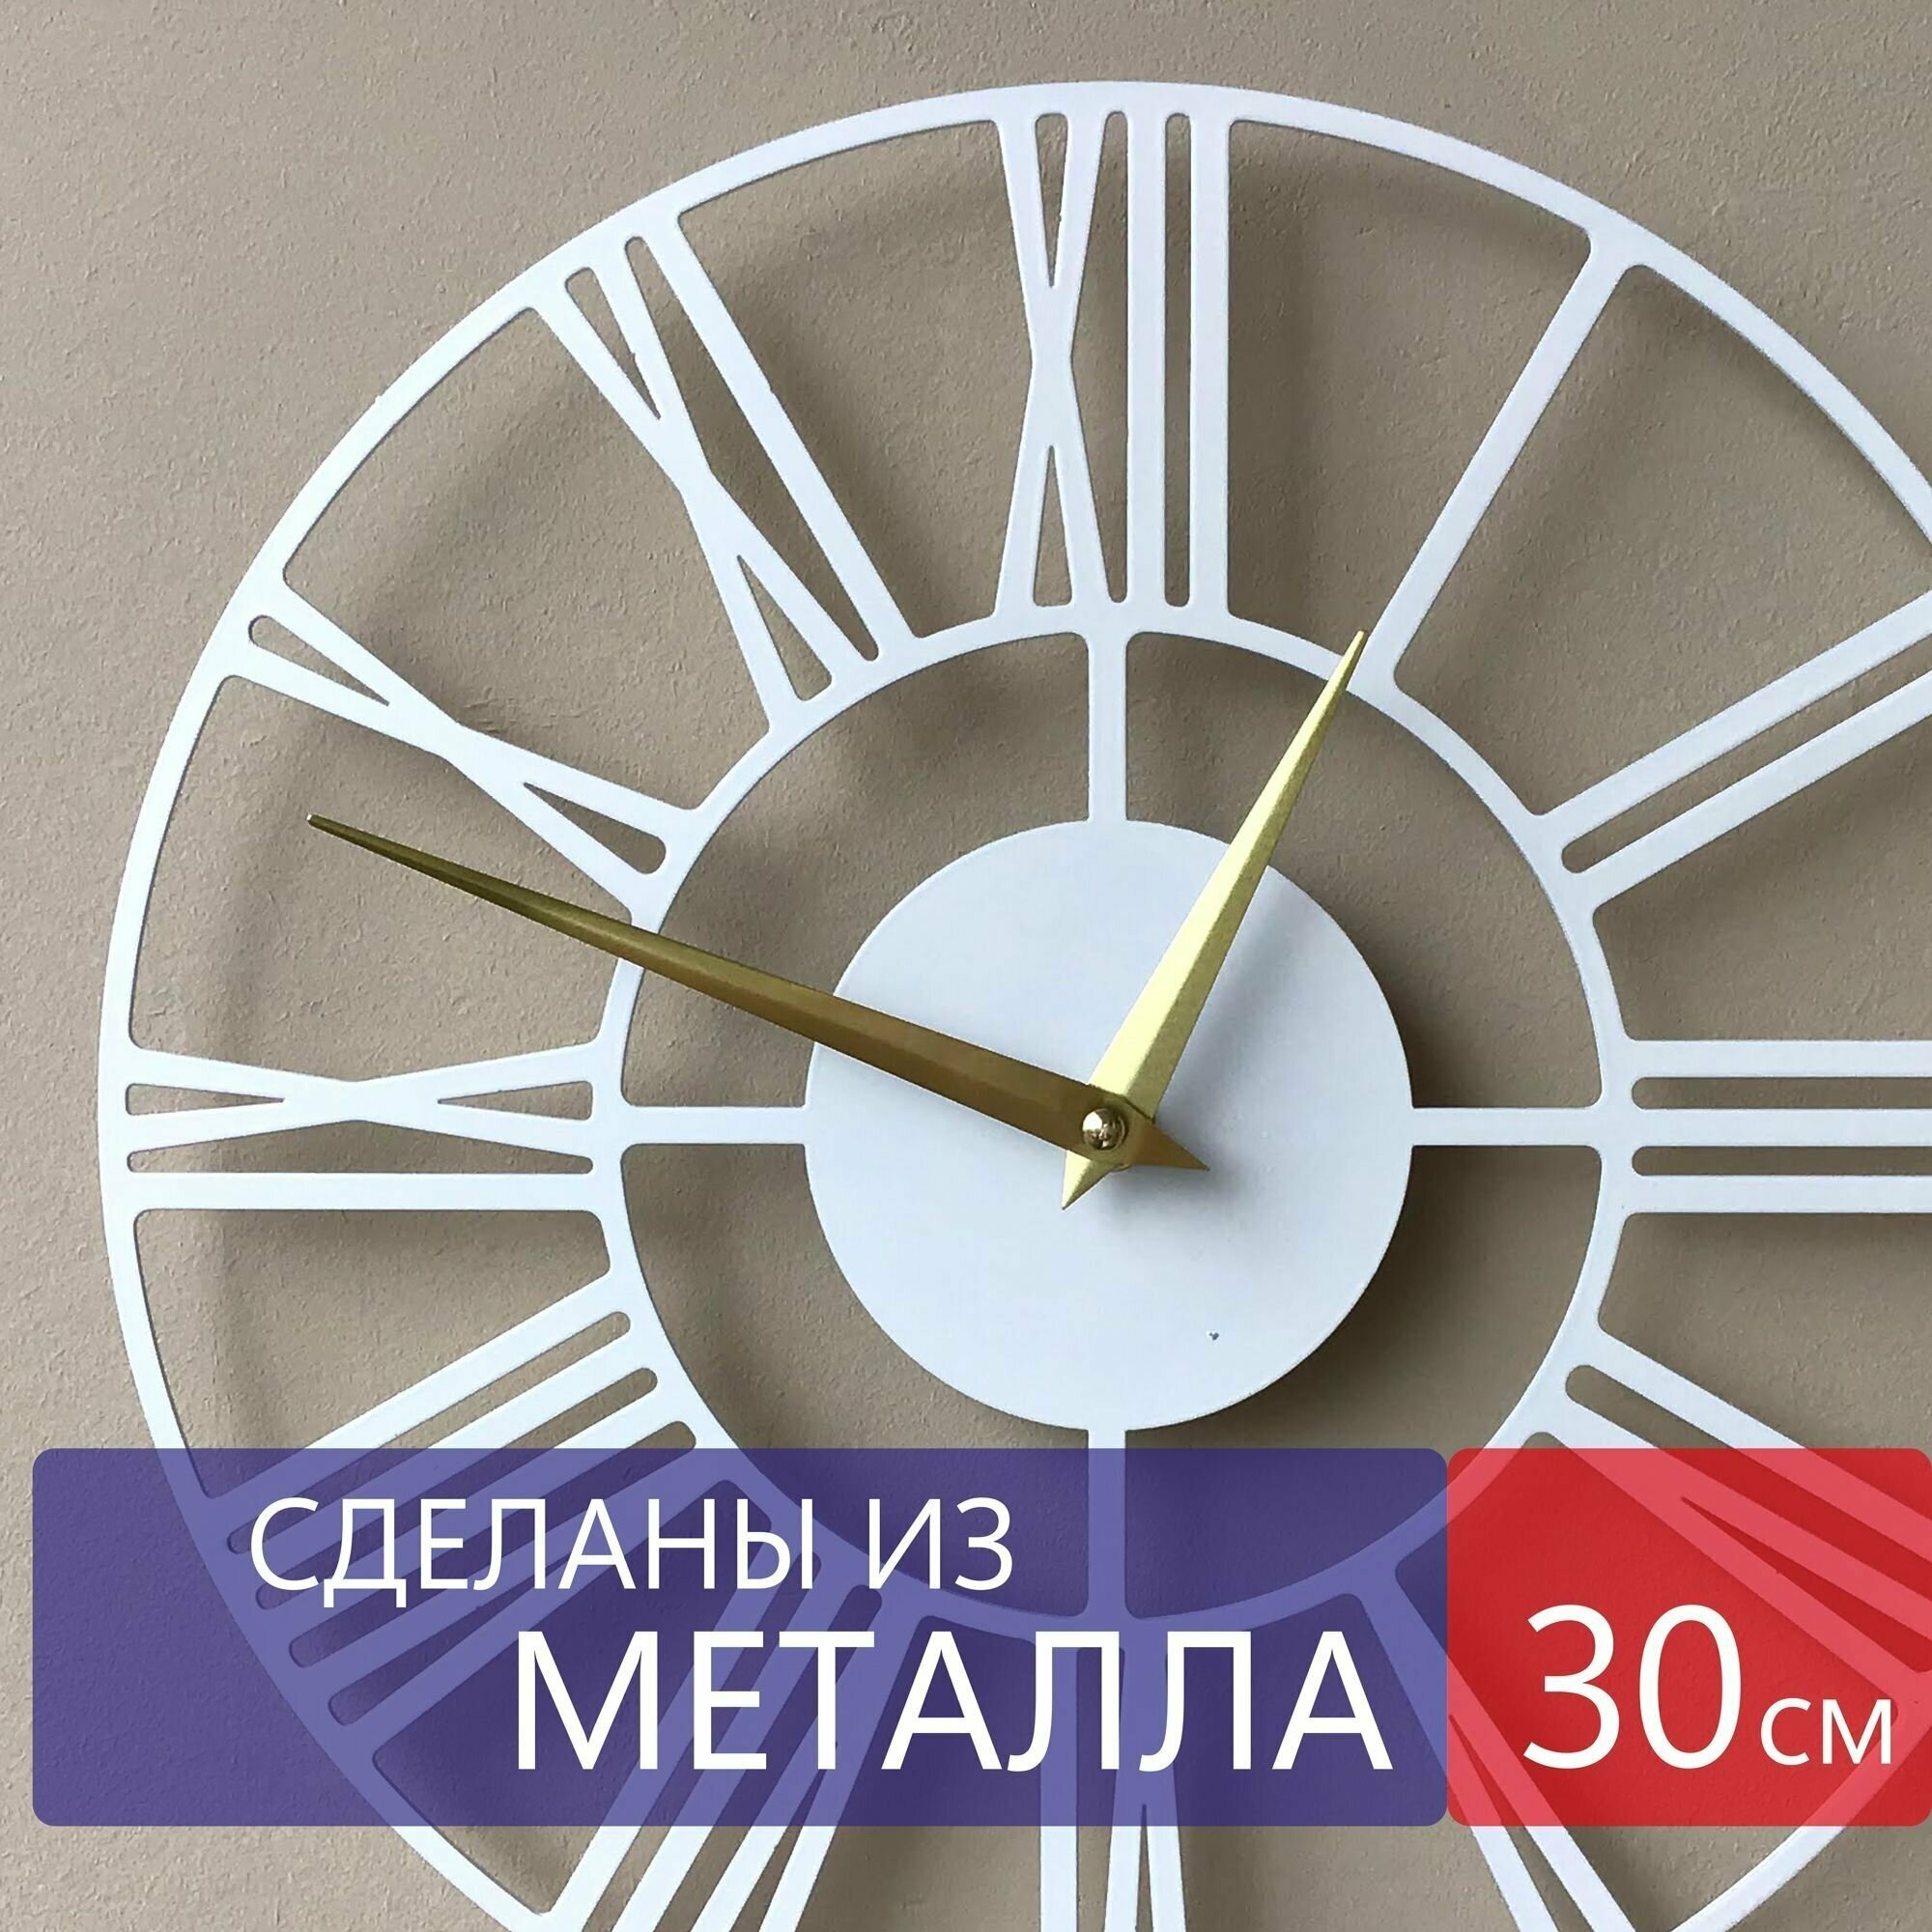 Настенные часы из металла "Altair", бесшумные, большие интерьерные часы, 30см х 30см, белые